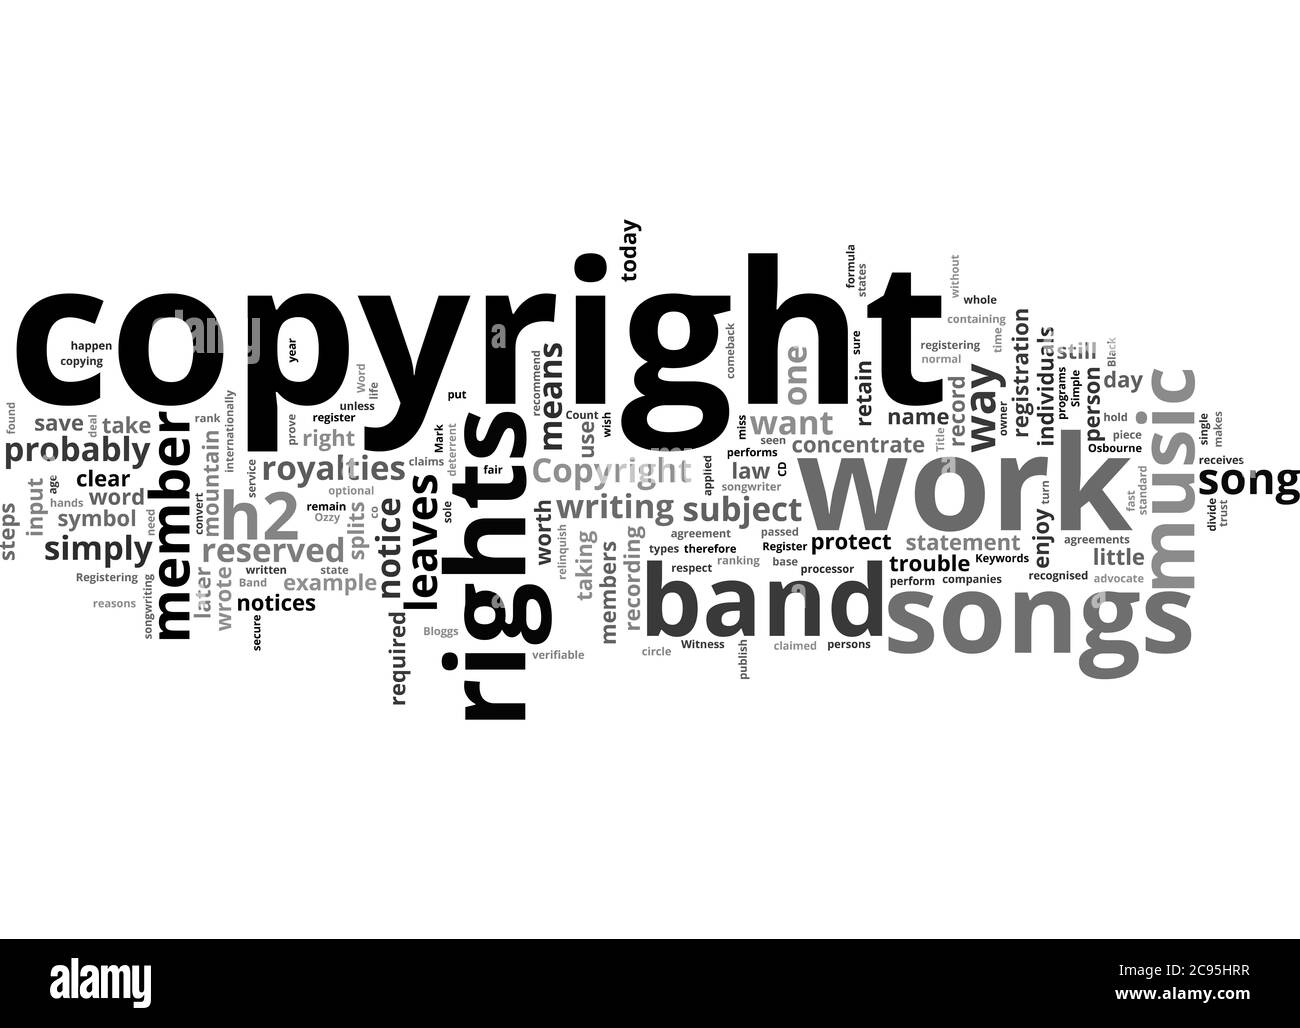 Word Cloud Zusammenfassung von Copyright und Musik der richtige Weg, um  Ihre Rechte zu schützen Artikel Stockfotografie - Alamy